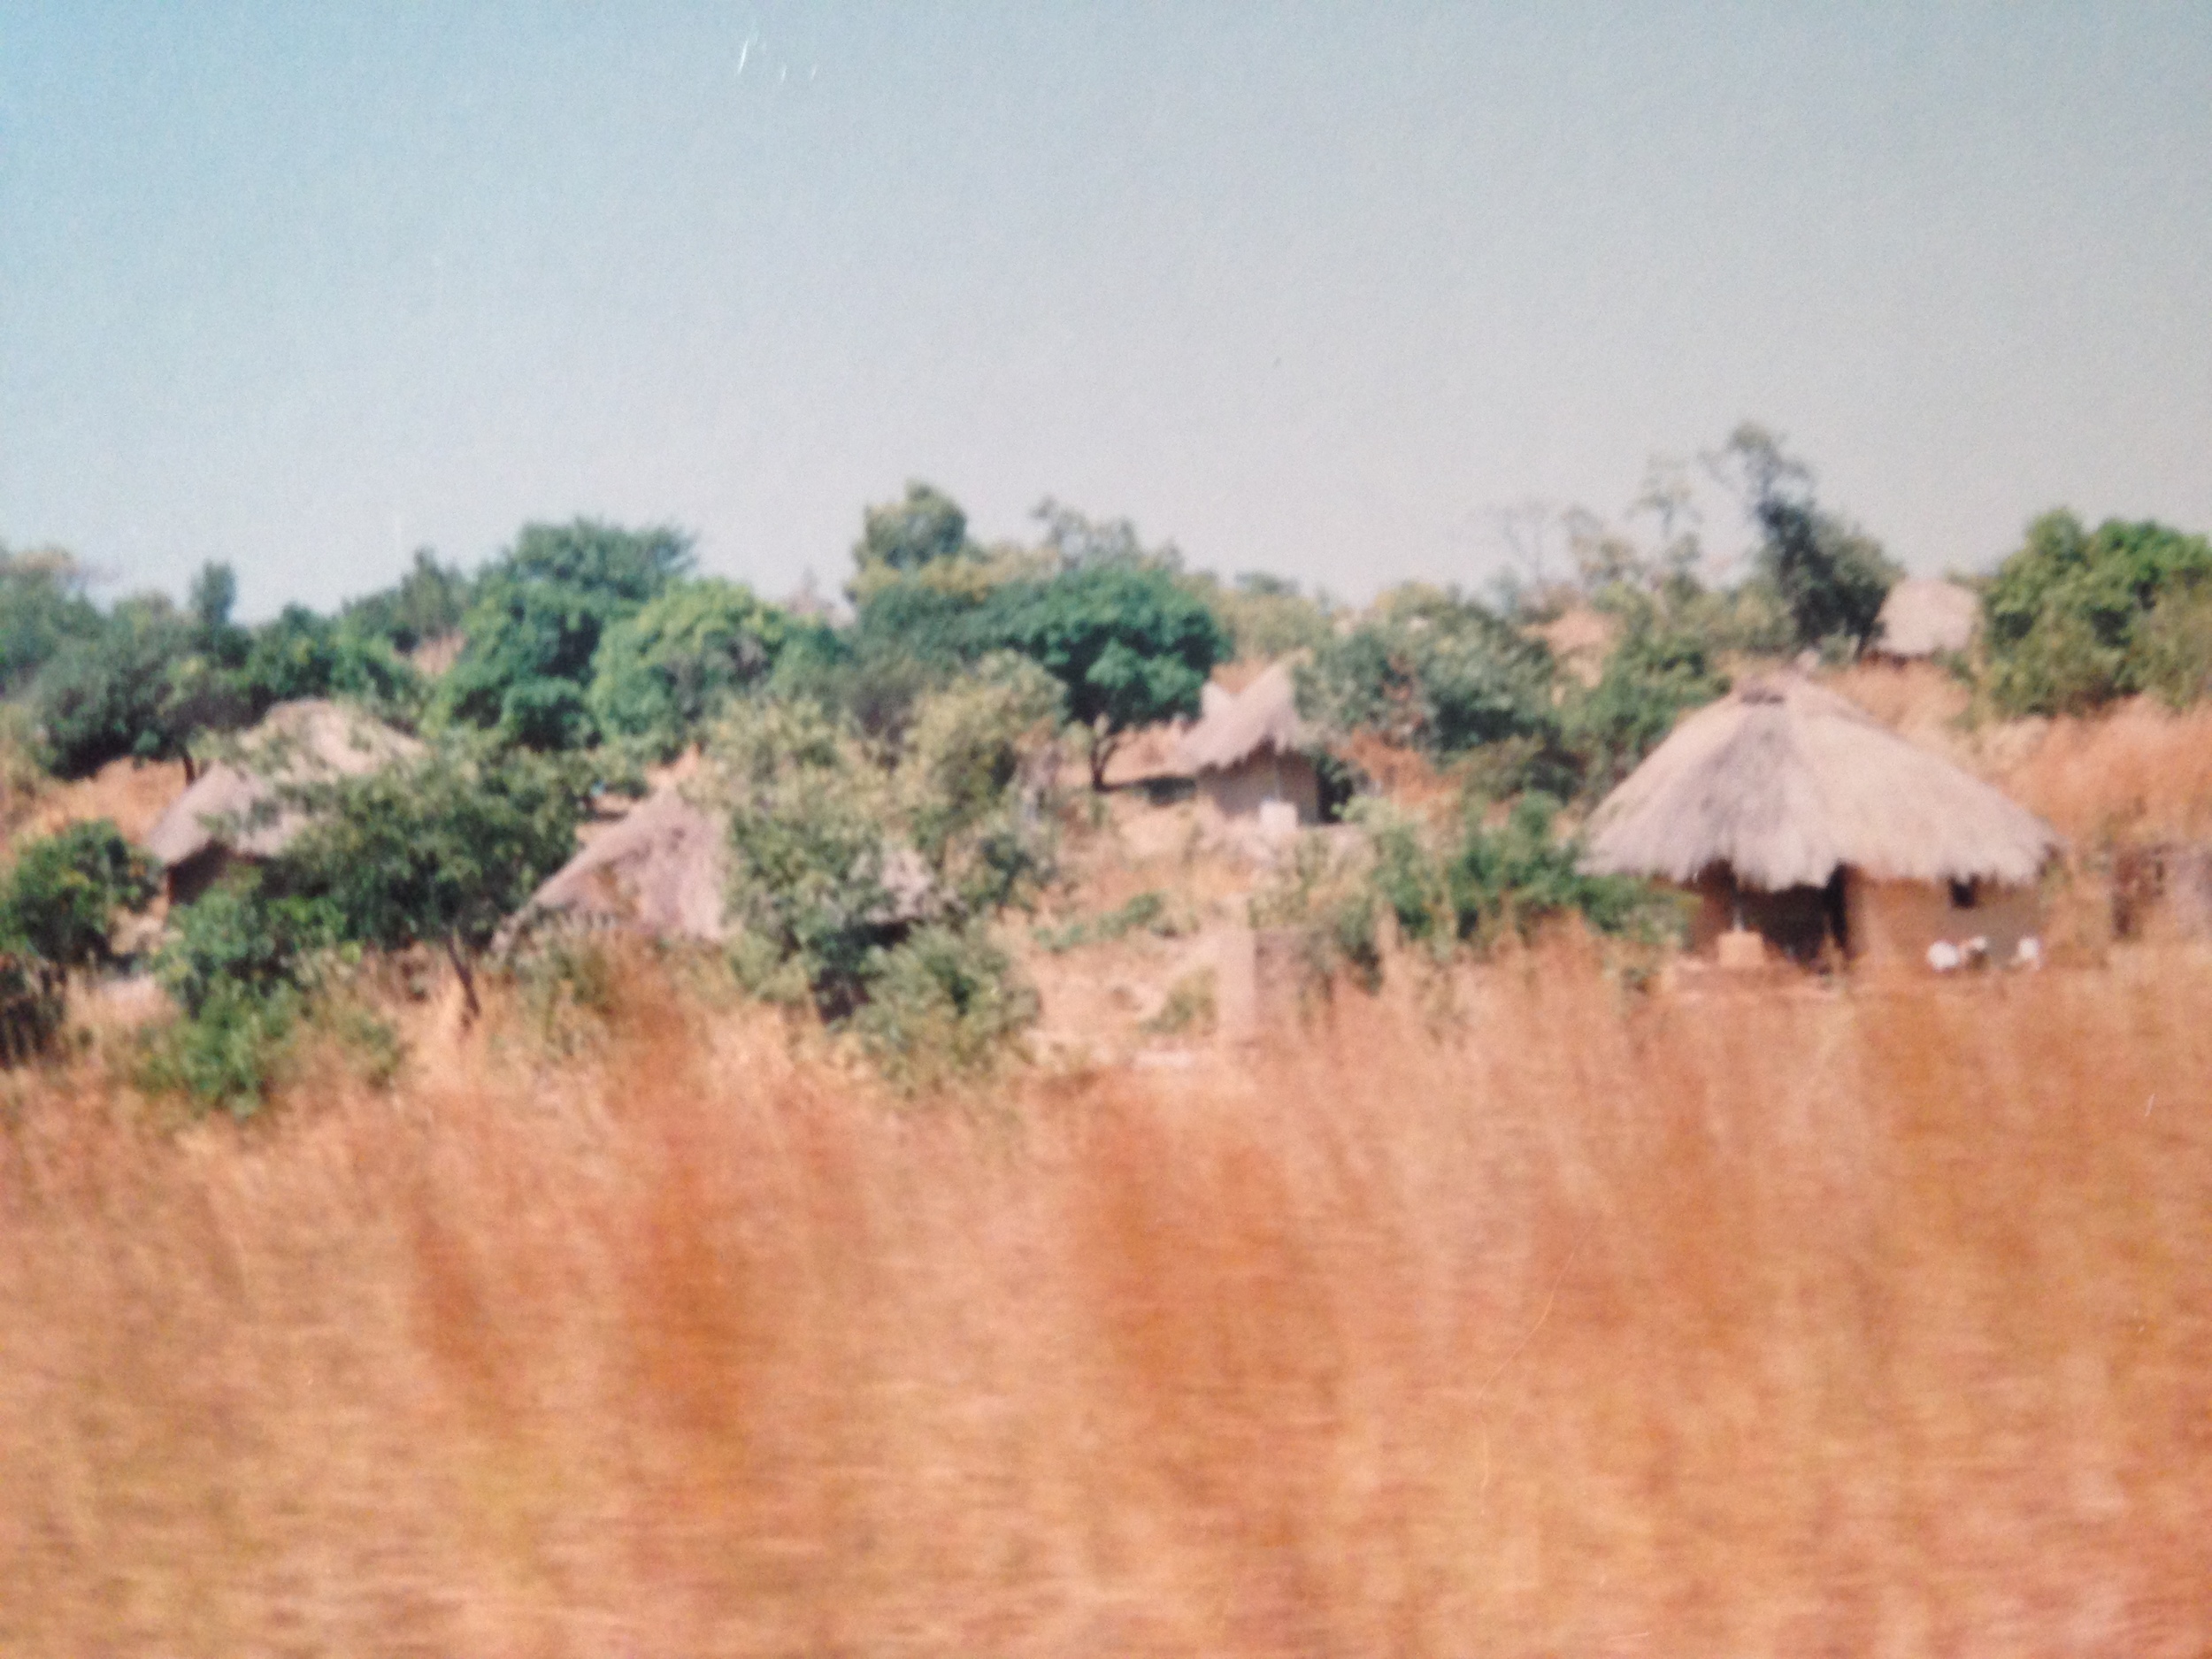 My village - Mulundu, Zambia